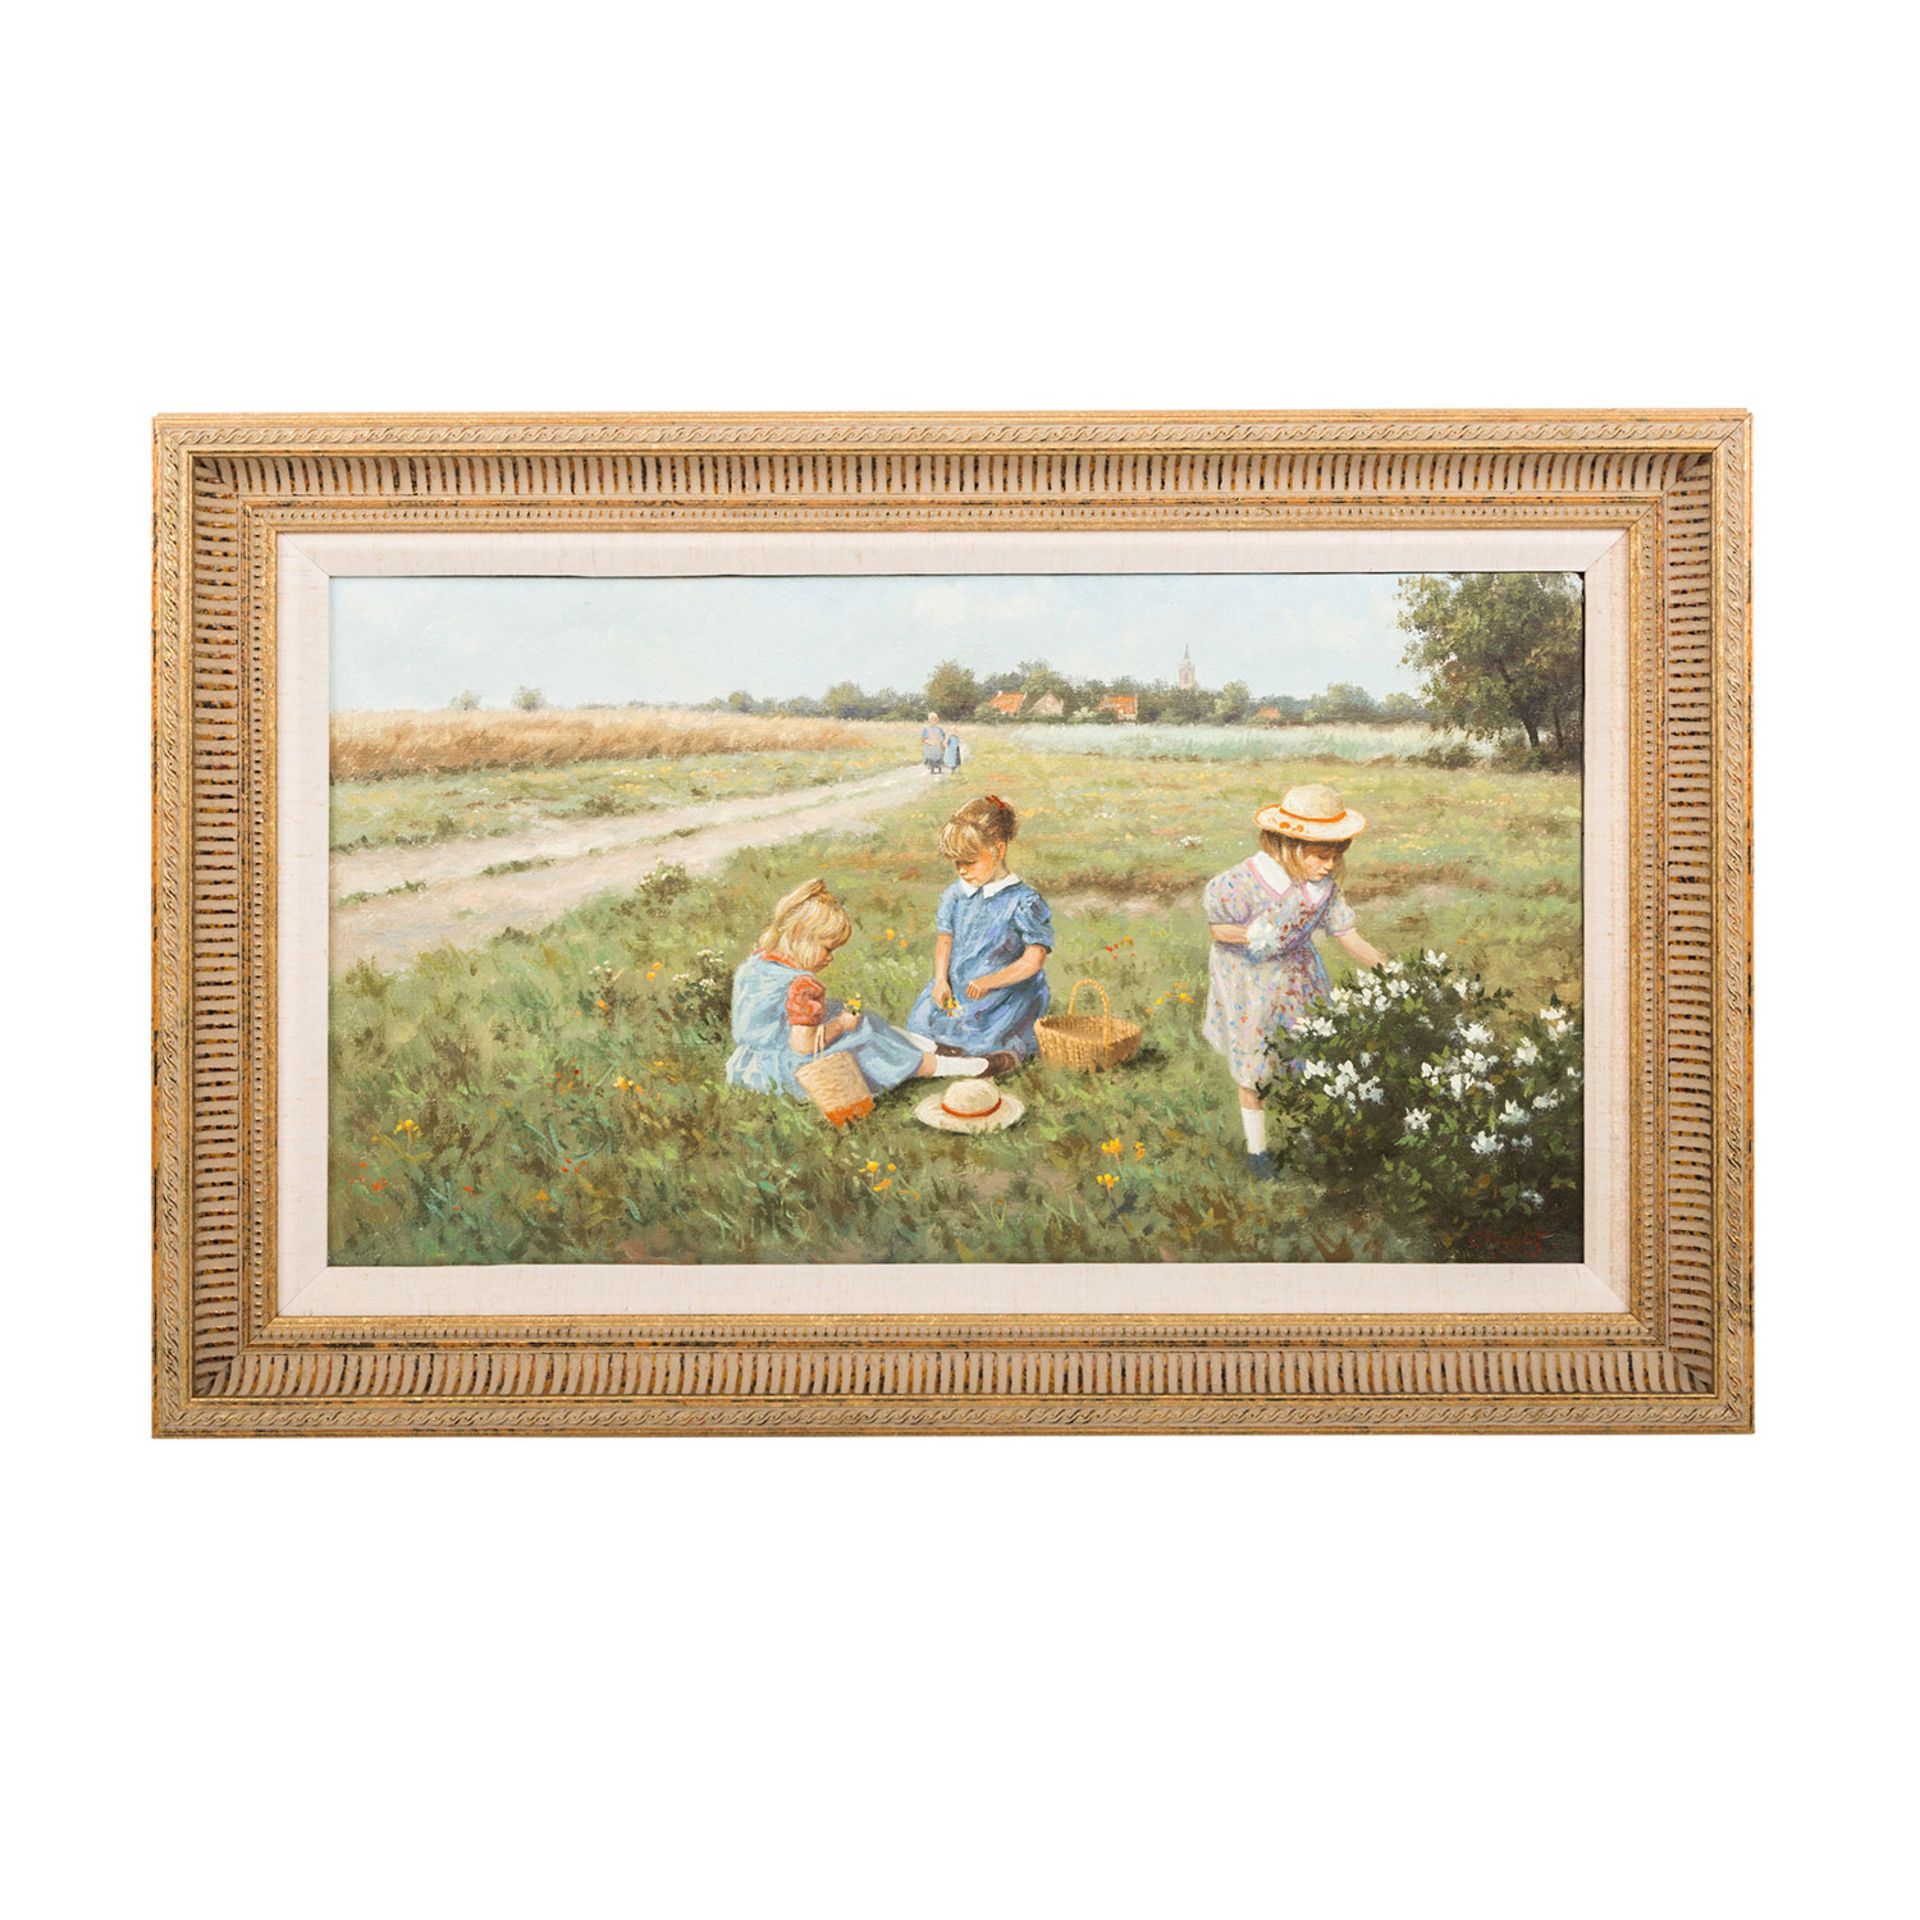 MEILOF, RON (Maler 20. Jh.), "Blumen pflückende Kinder", u.re. sign., Öl auf Leinwand, ca. 30x54 - Bild 2 aus 4